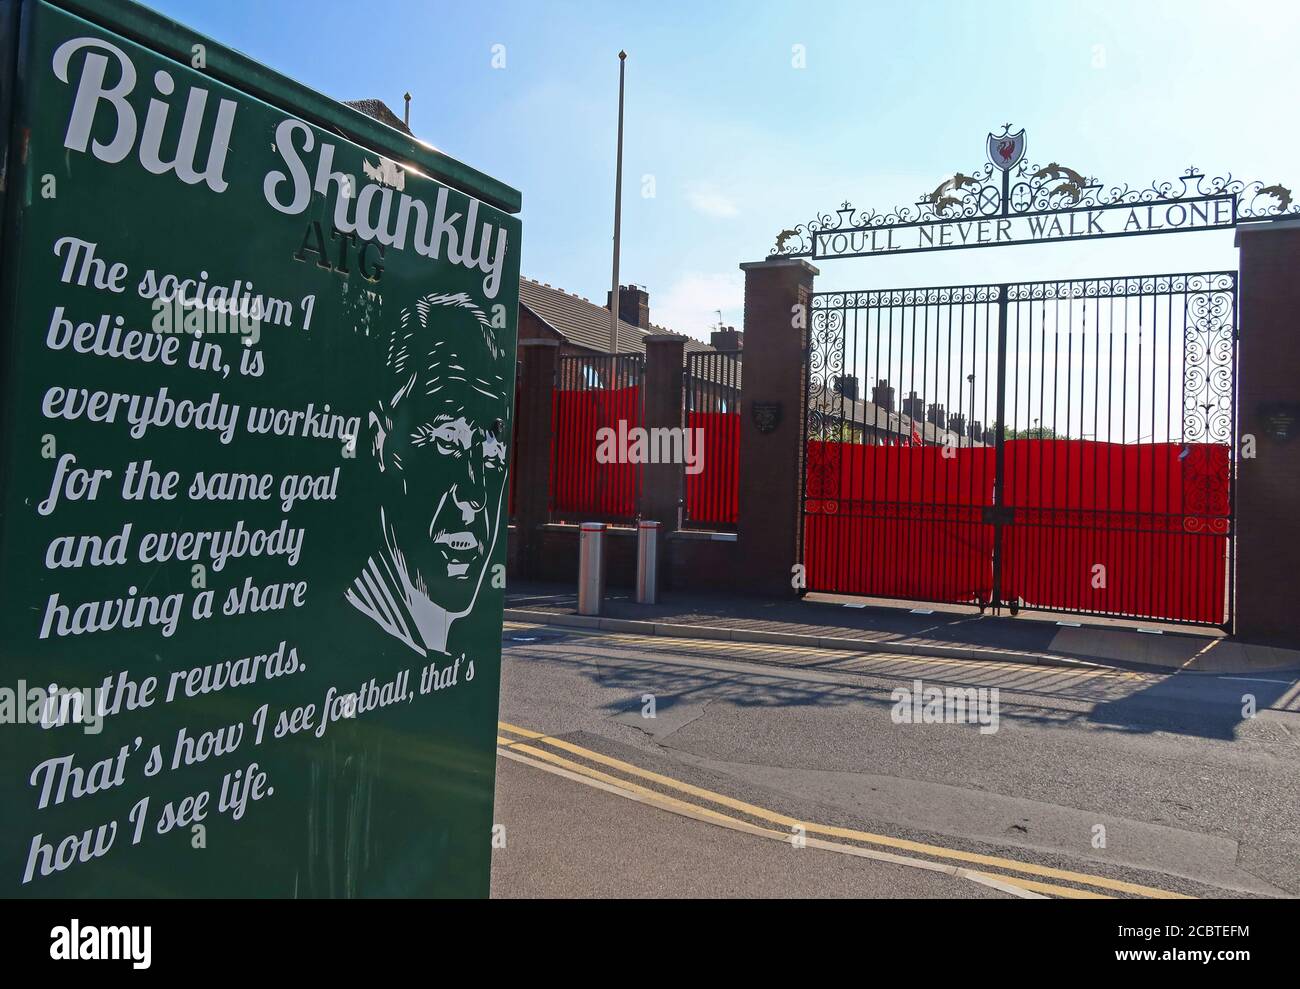 Bill Shankly, vous ne marchera jamais seul Gates, LFC, Liverpool football Club, Anfield, Premier League, Merseyside, North West England, UK, L4 2UZ Banque D'Images